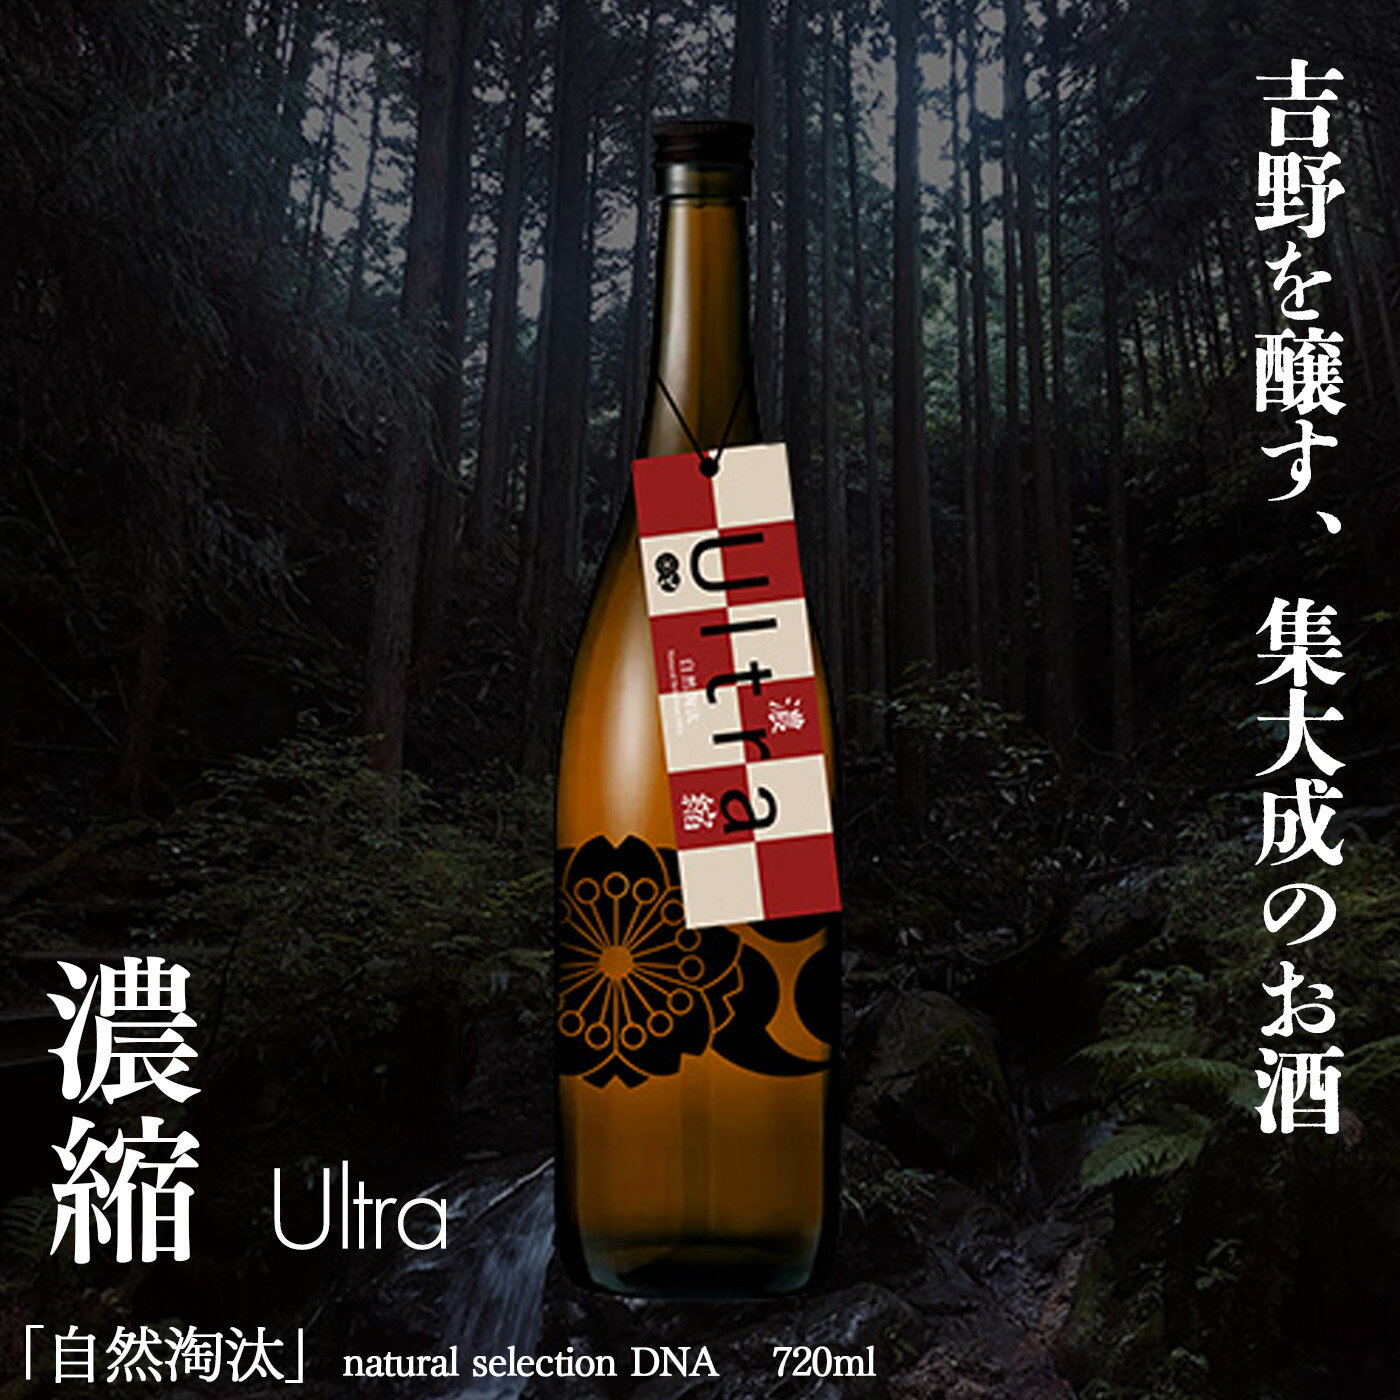 【ふるさと納税】自然淘汰 natural selection DNA Ultra濃縮 日本酒 720ml 酒 美吉野酒造 奈良県 吉野町